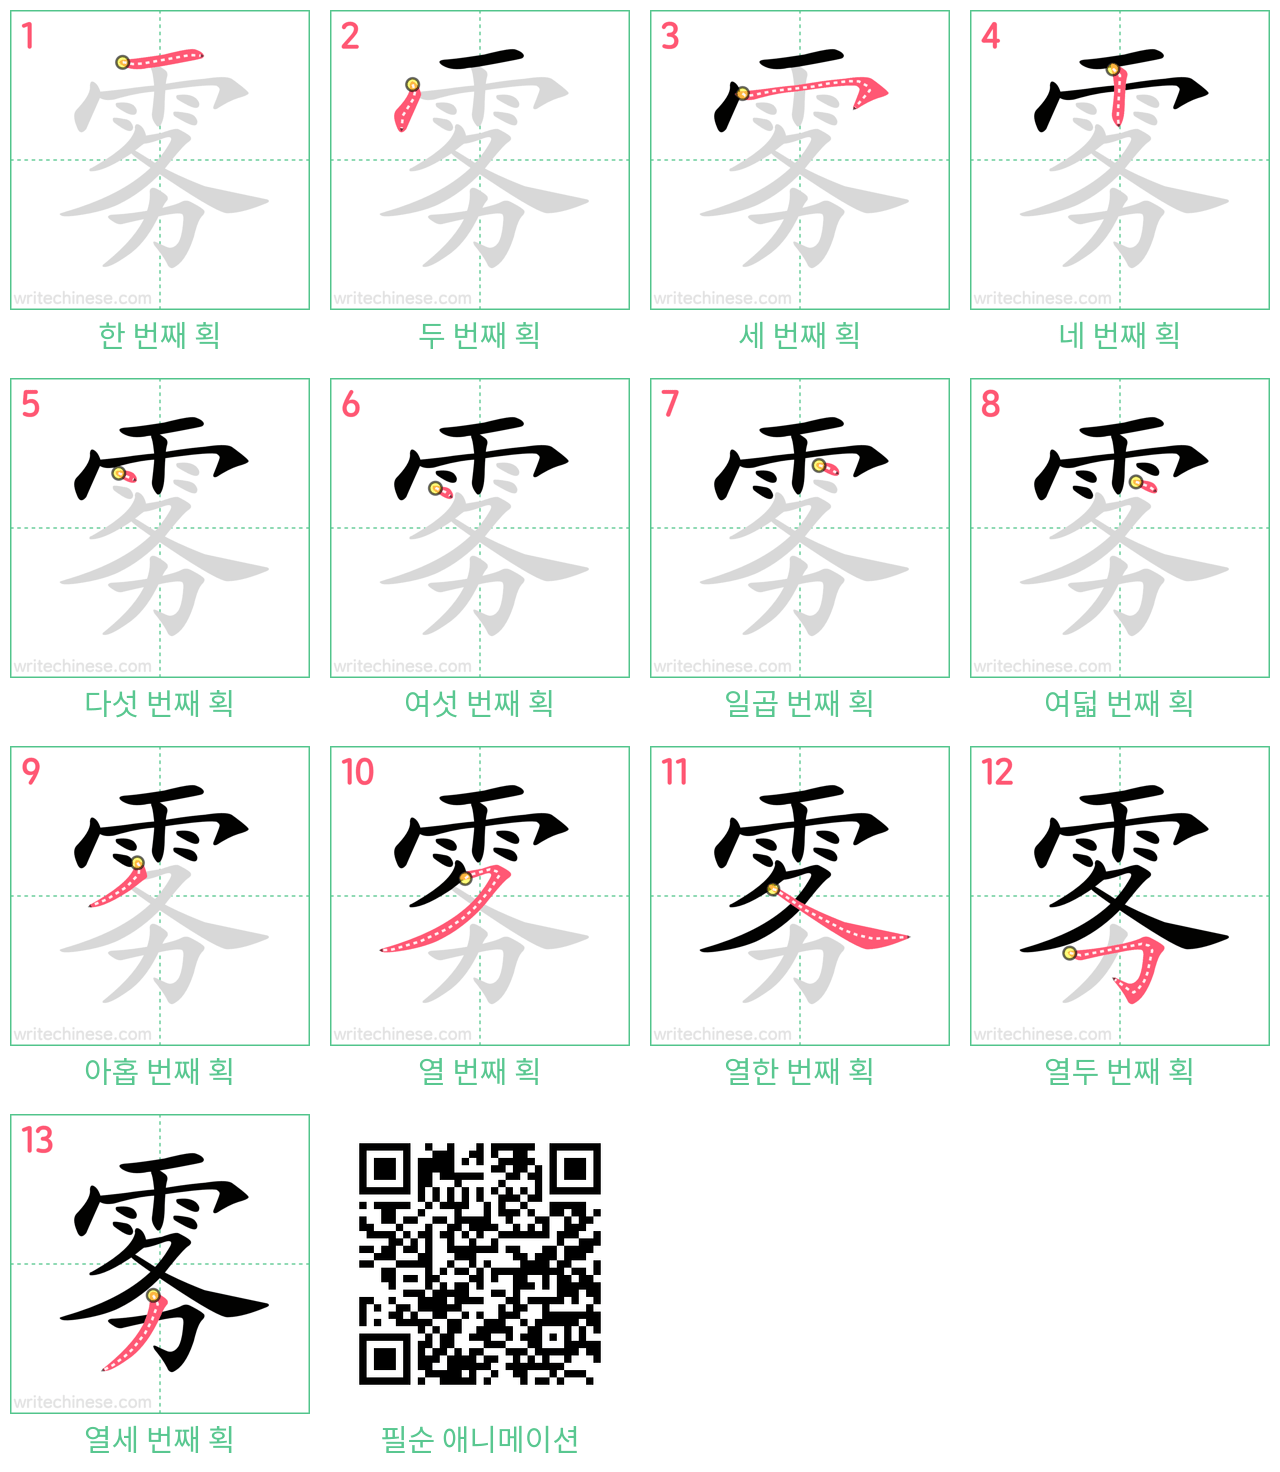 雾 step-by-step stroke order diagrams